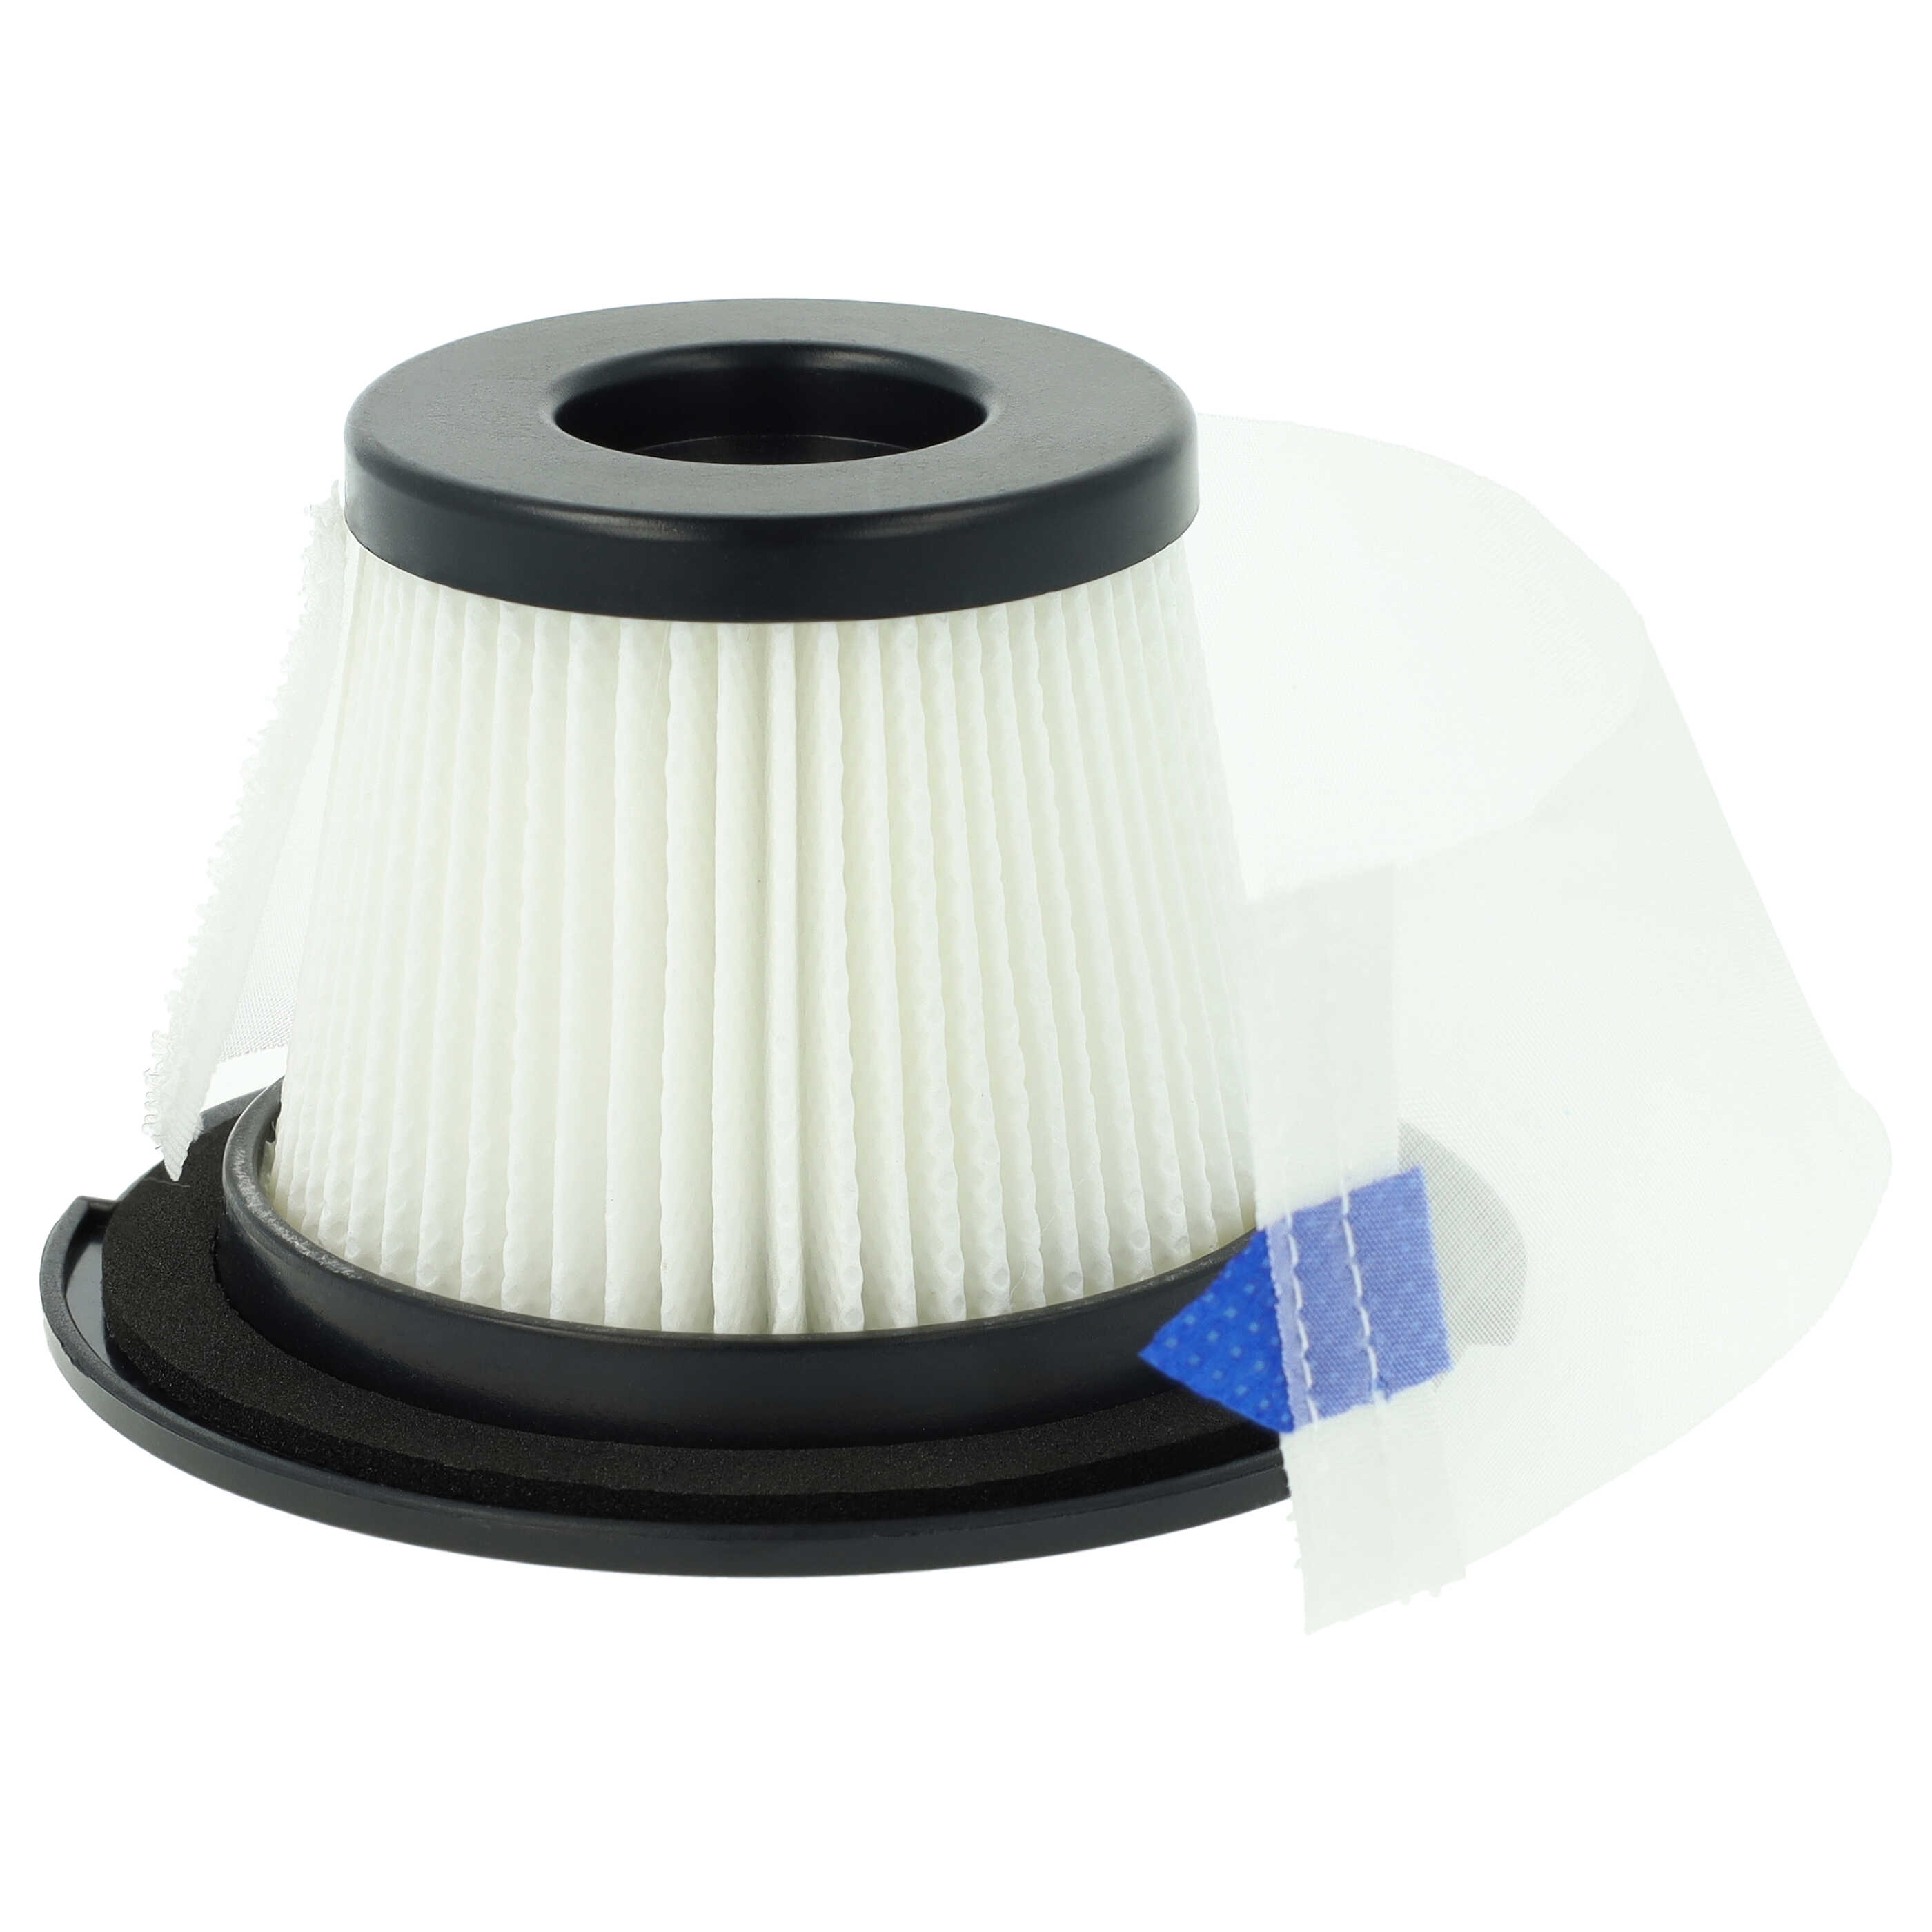 Filtre pour aspirateur Klarstein, Moosoo, Sauber Clean Butler 4G Silent 10033762 - filtre F8